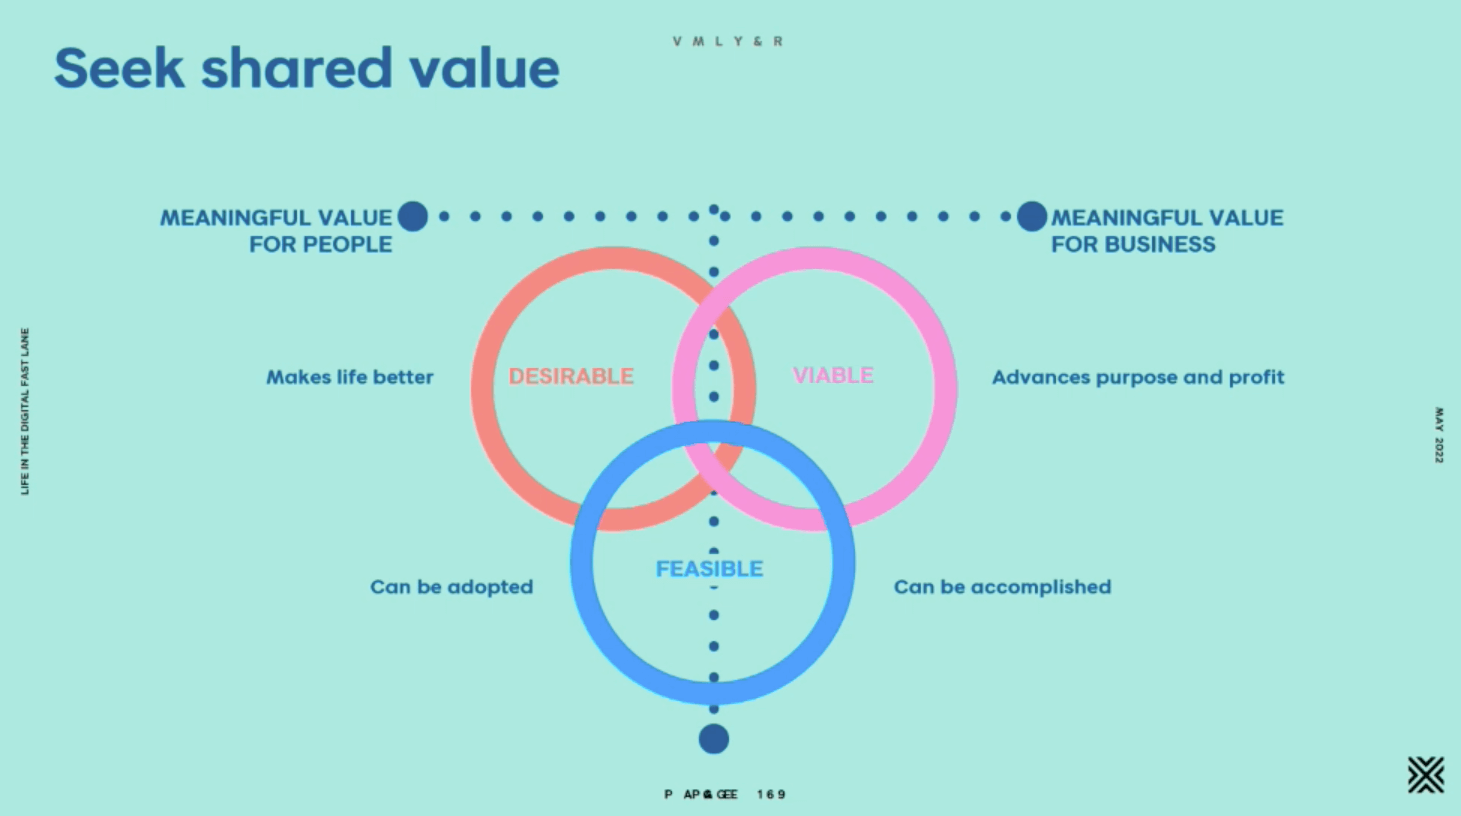  Karen Boswell's slide with shared value framework